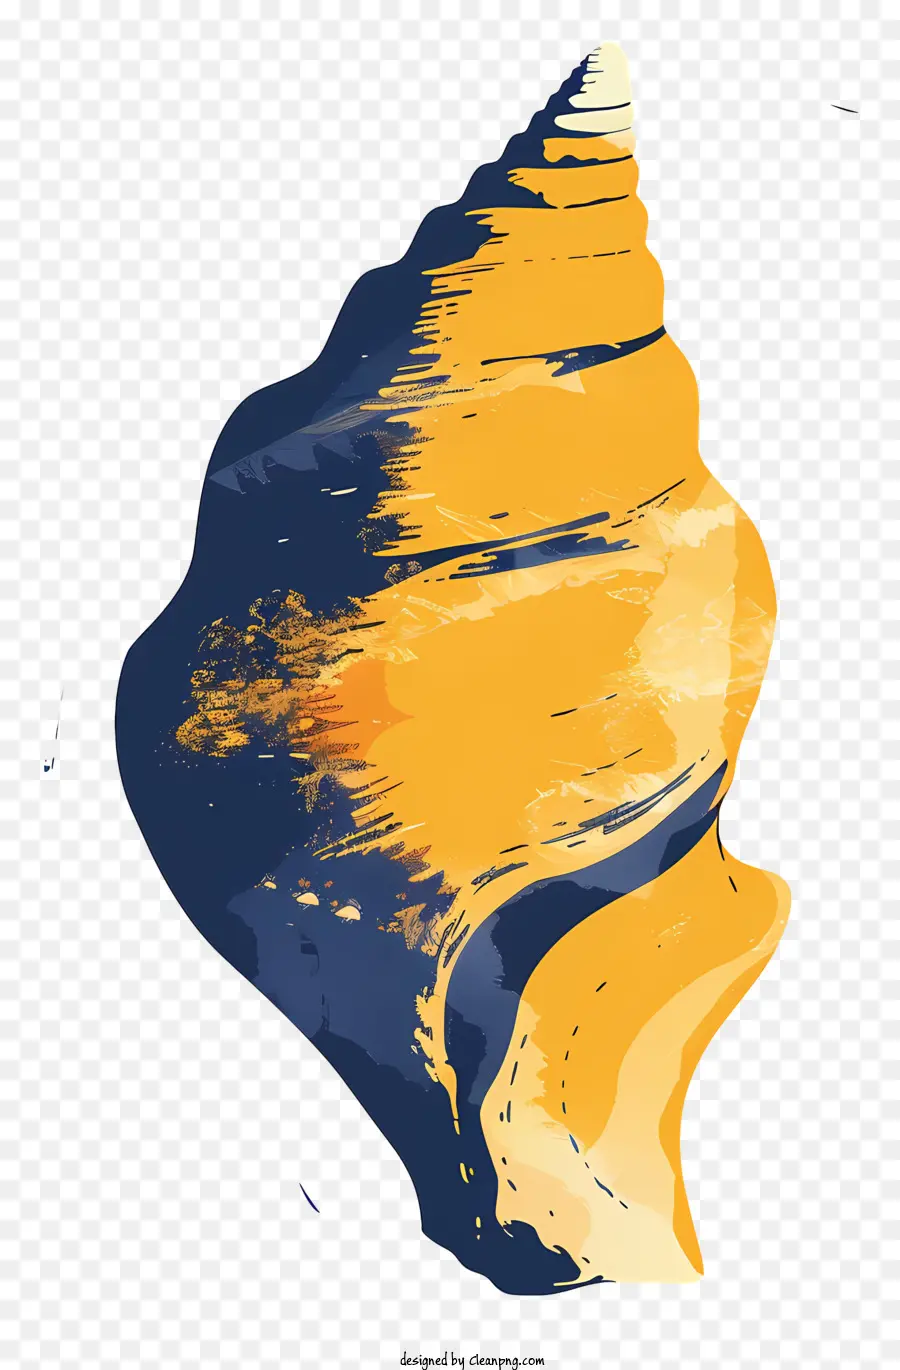 Conch Muschelmalerei impressionistische Kunst Orange Muschelblau und lila Hintergrund - Impressionistische Gemälde der orangen Muschel mit lila Hintergrund